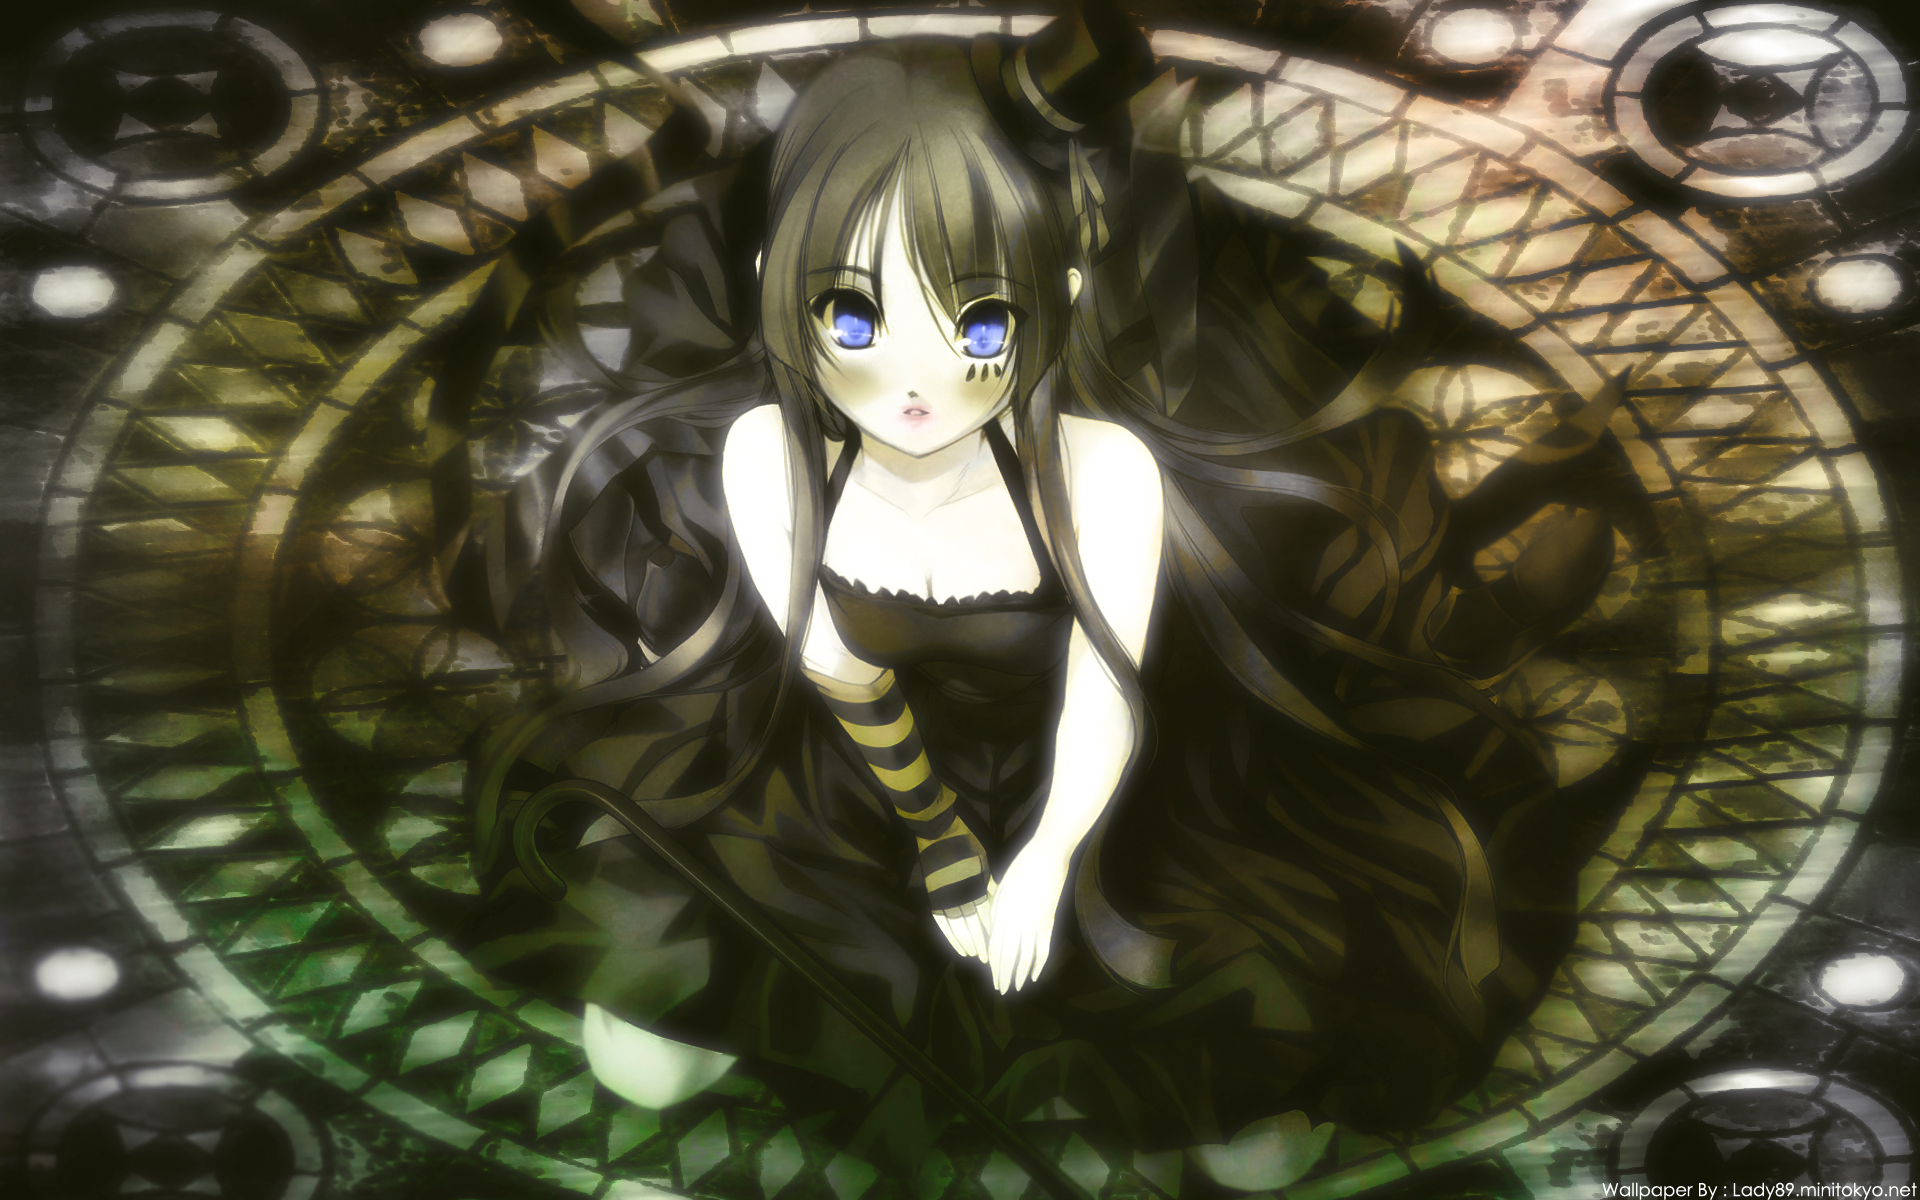 Gothic-style artwork featuring Mio Akiyama.